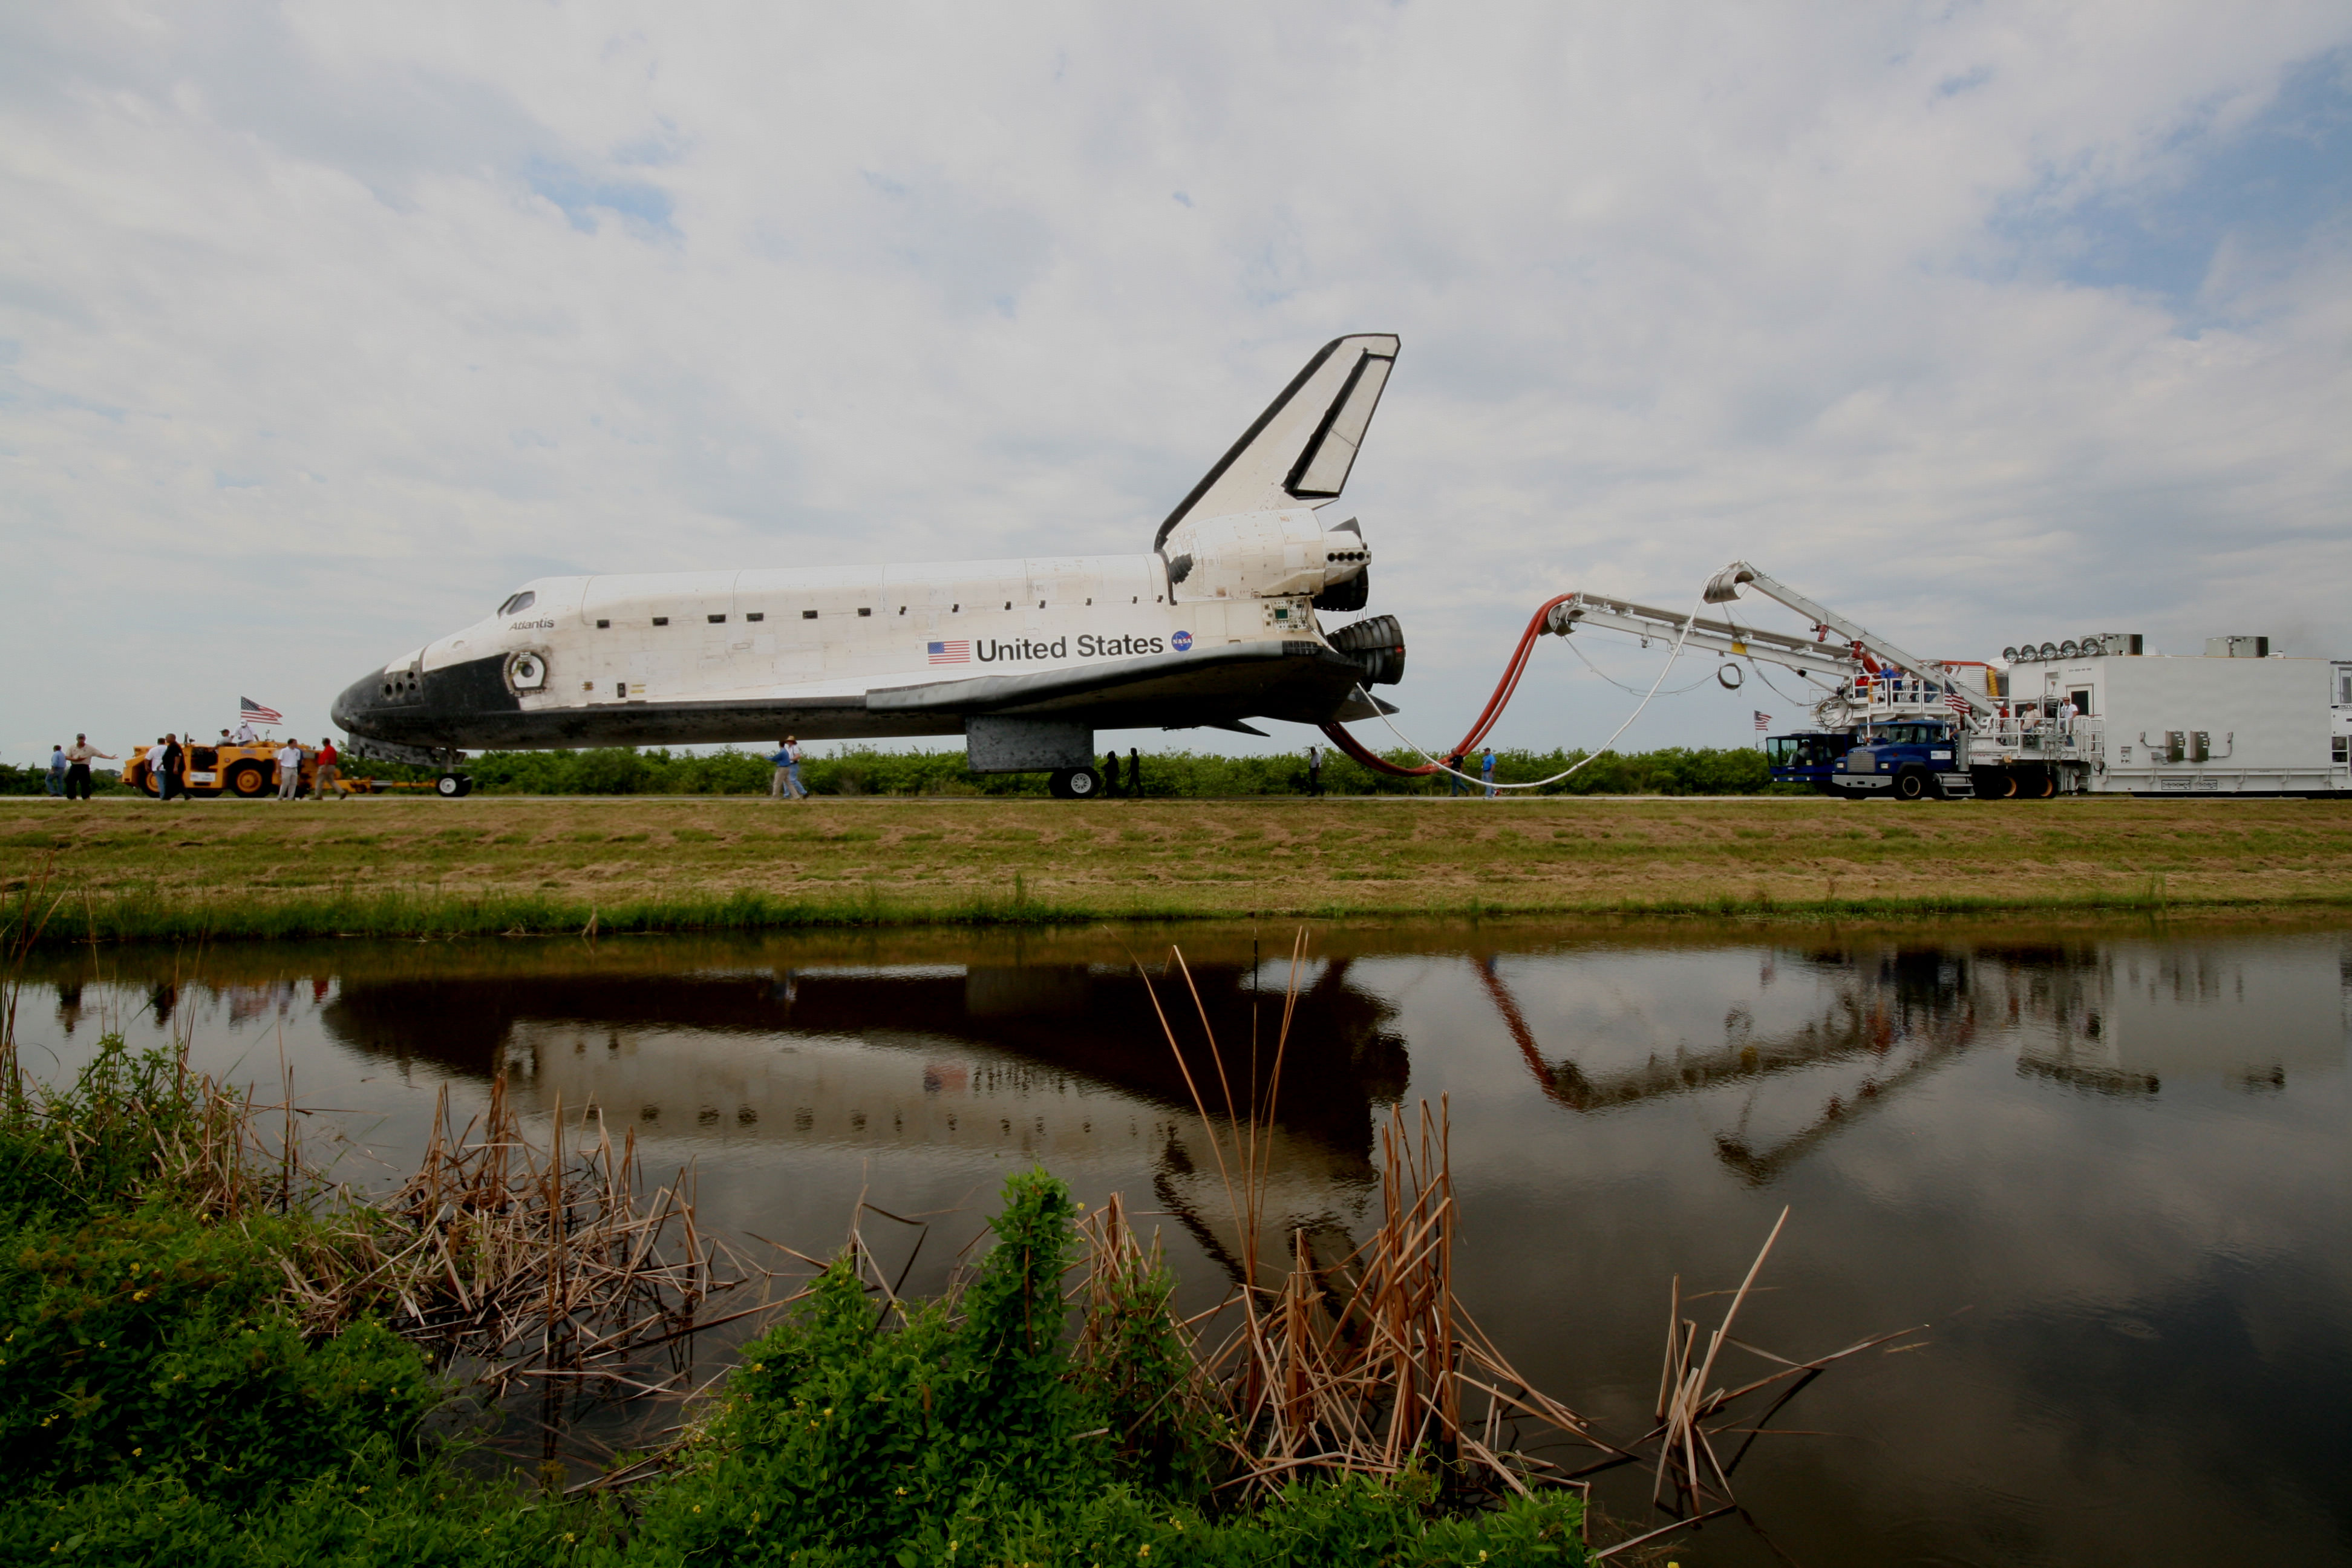 space shuttle atlantis last launch